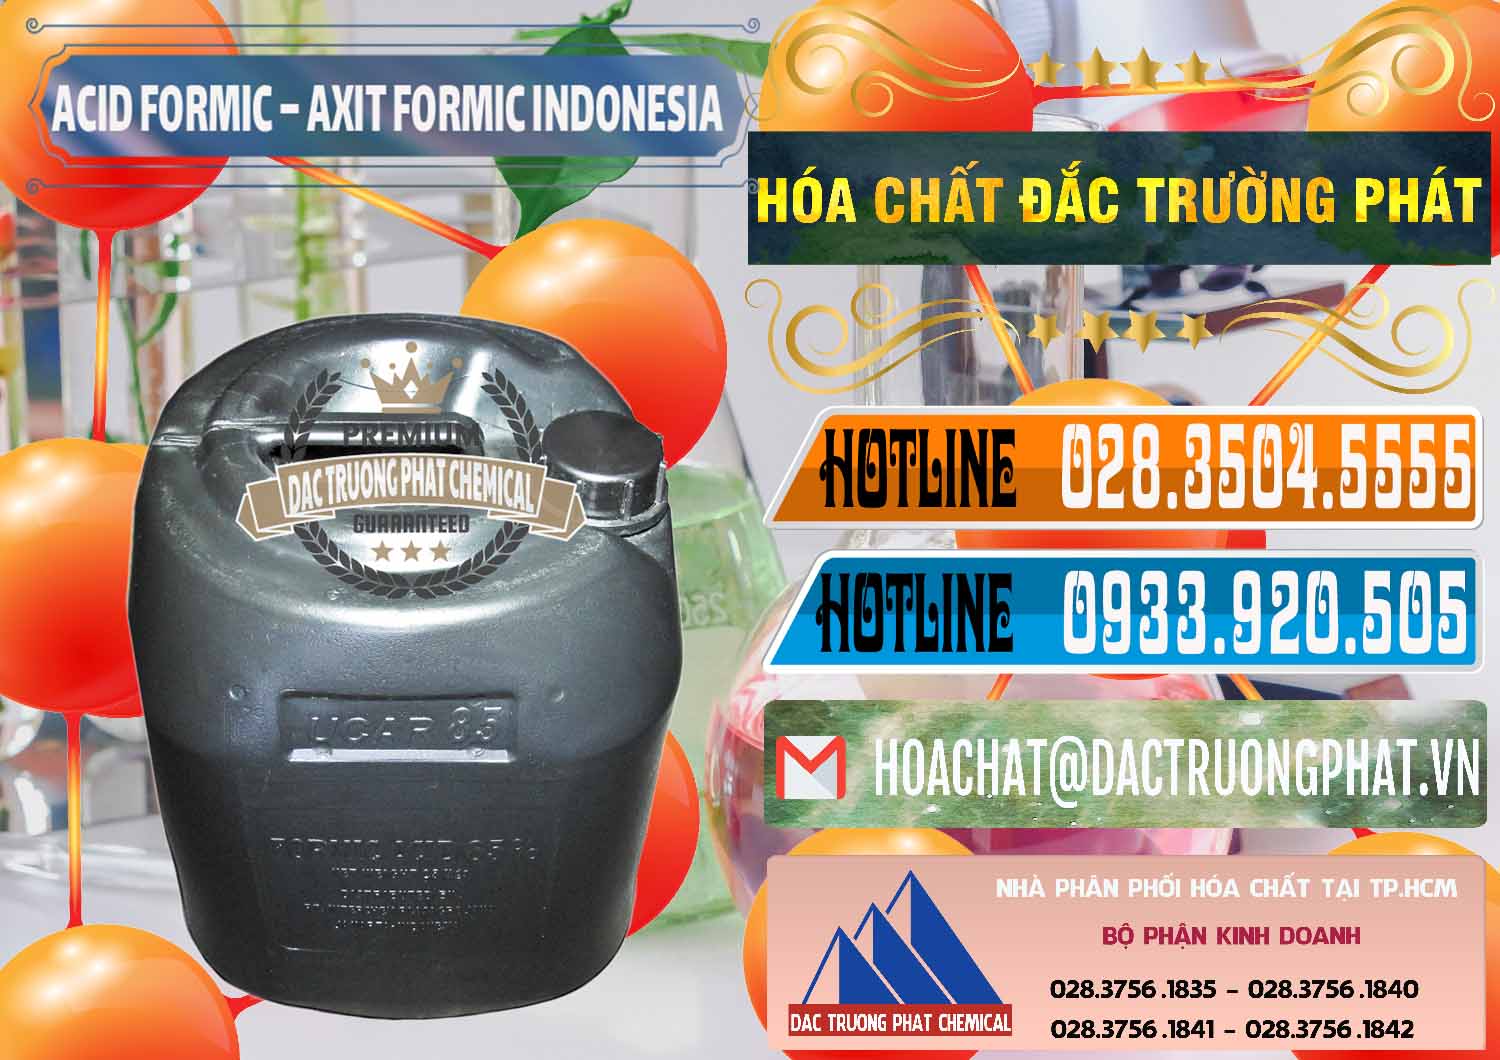 Công ty chuyên bán - cung ứng Acid Formic - Axit Formic Indonesia - 0026 - Cty nhập khẩu ( phân phối ) hóa chất tại TP.HCM - stmp.net